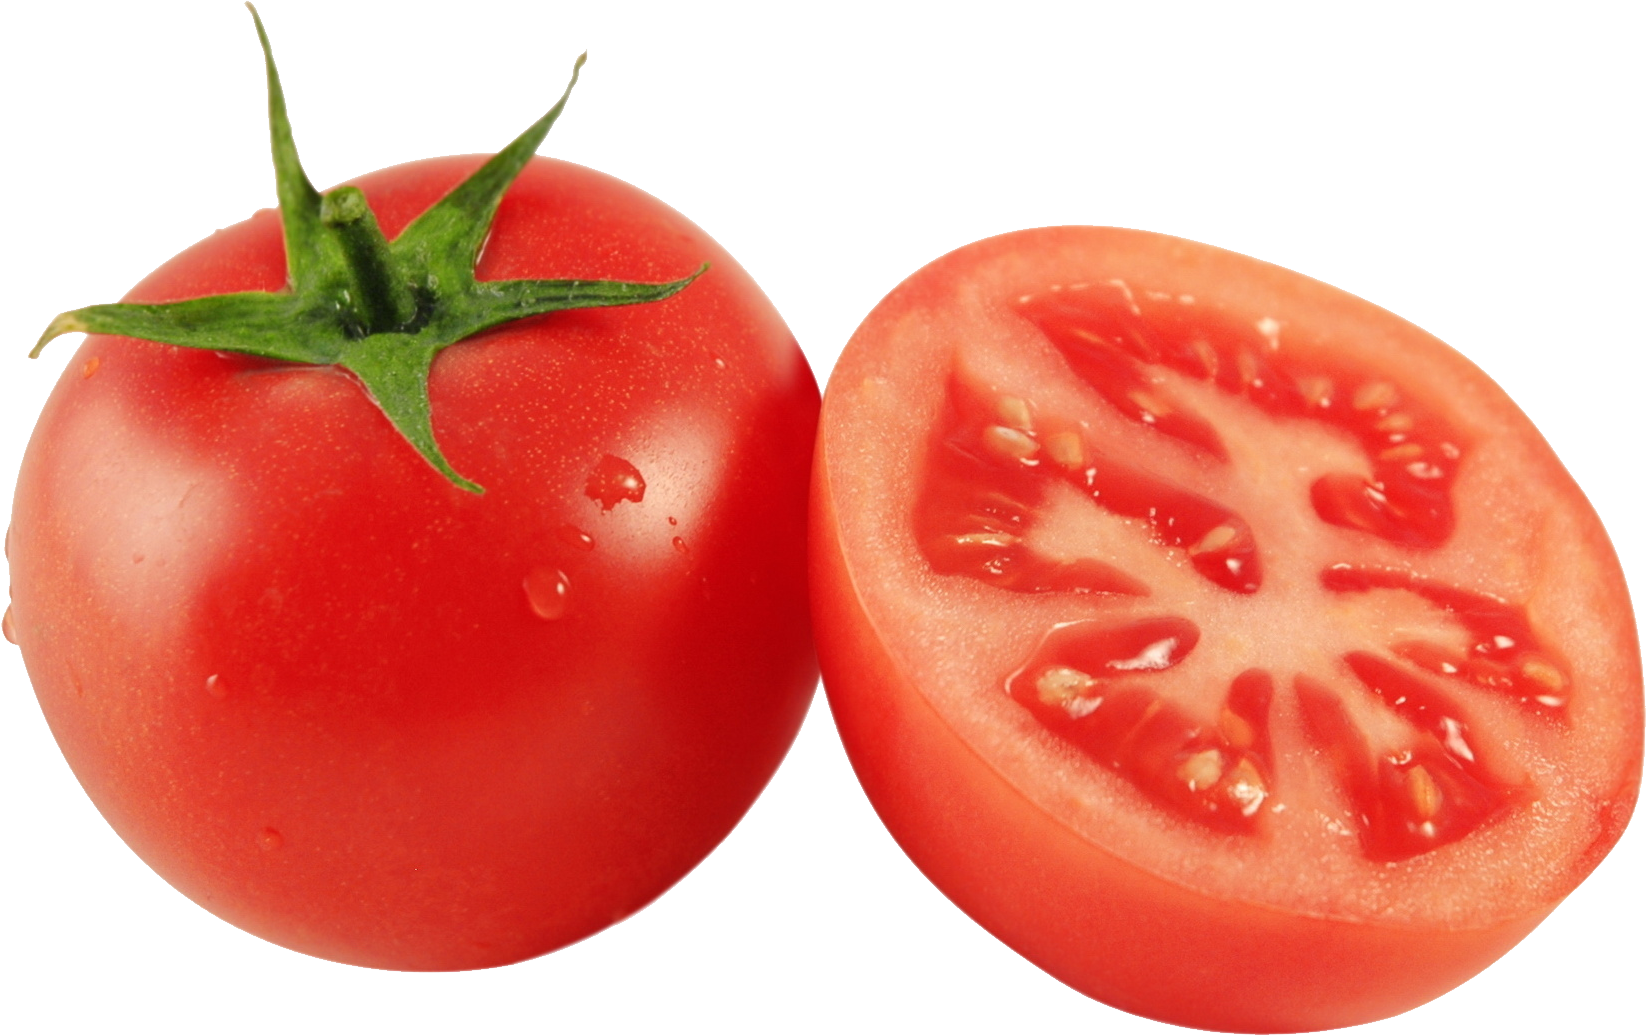 Tomato #Tomato